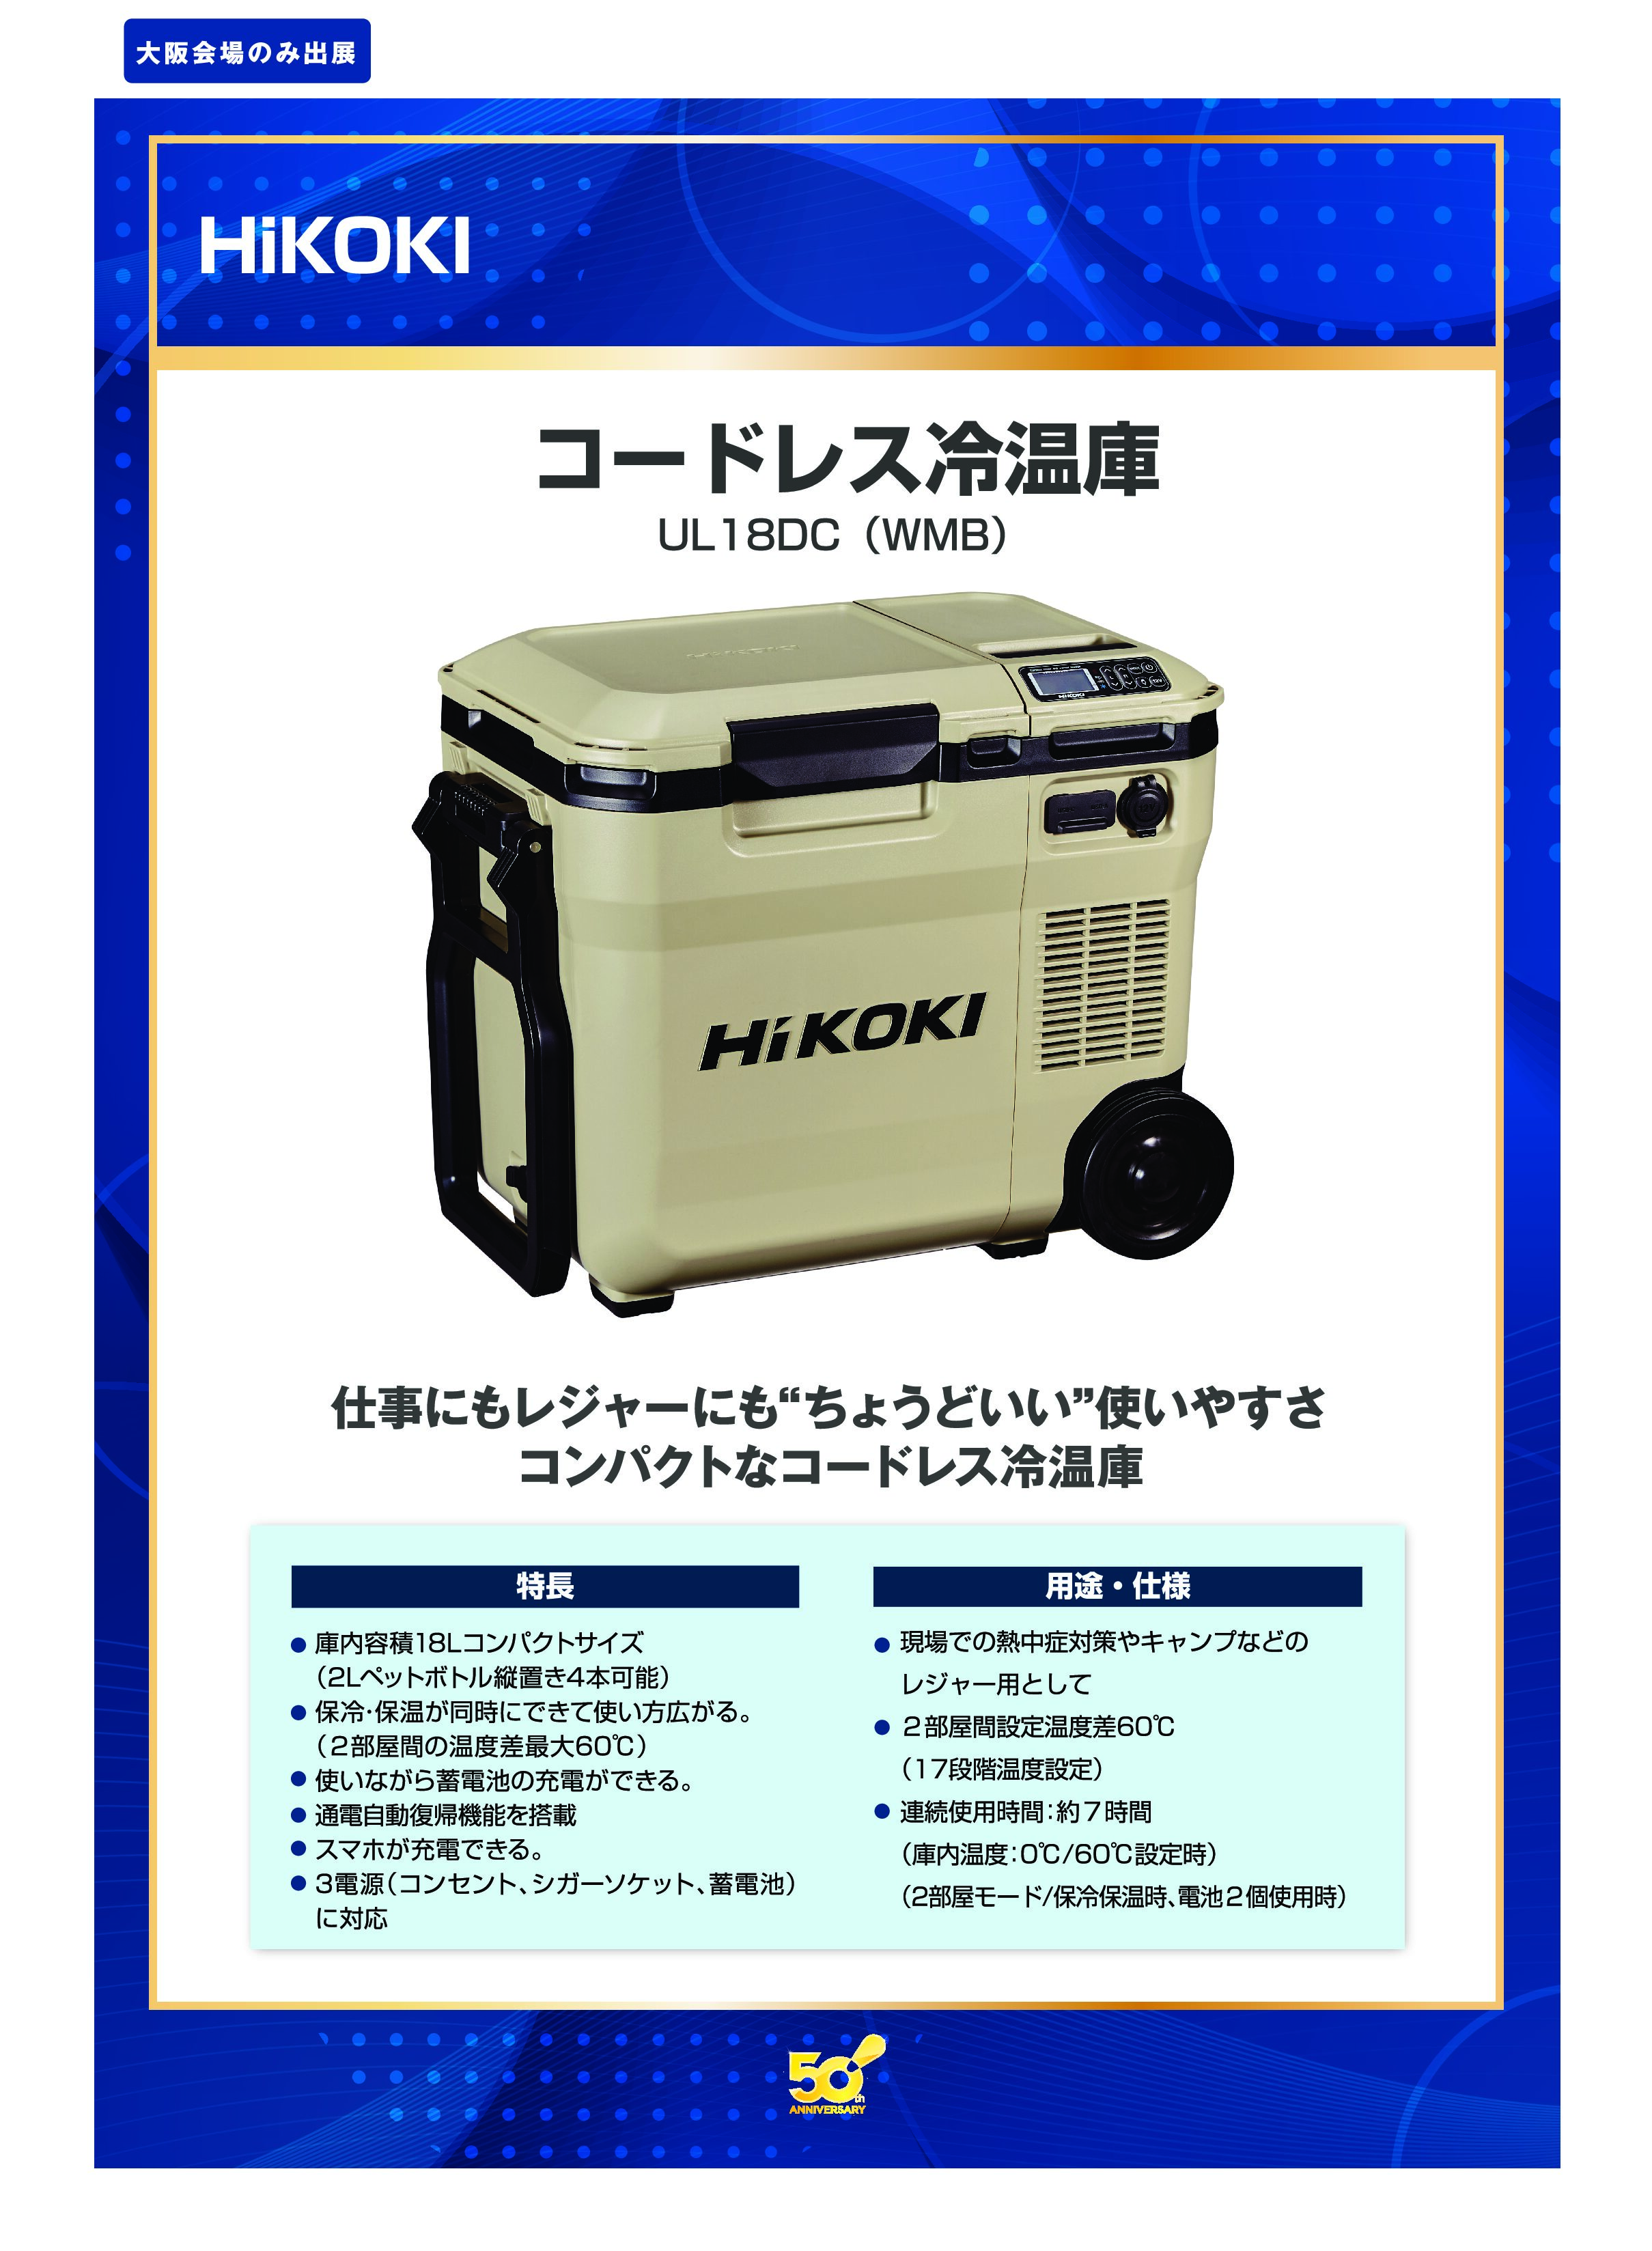 「コードレス冷温庫」HiKOKIの画像